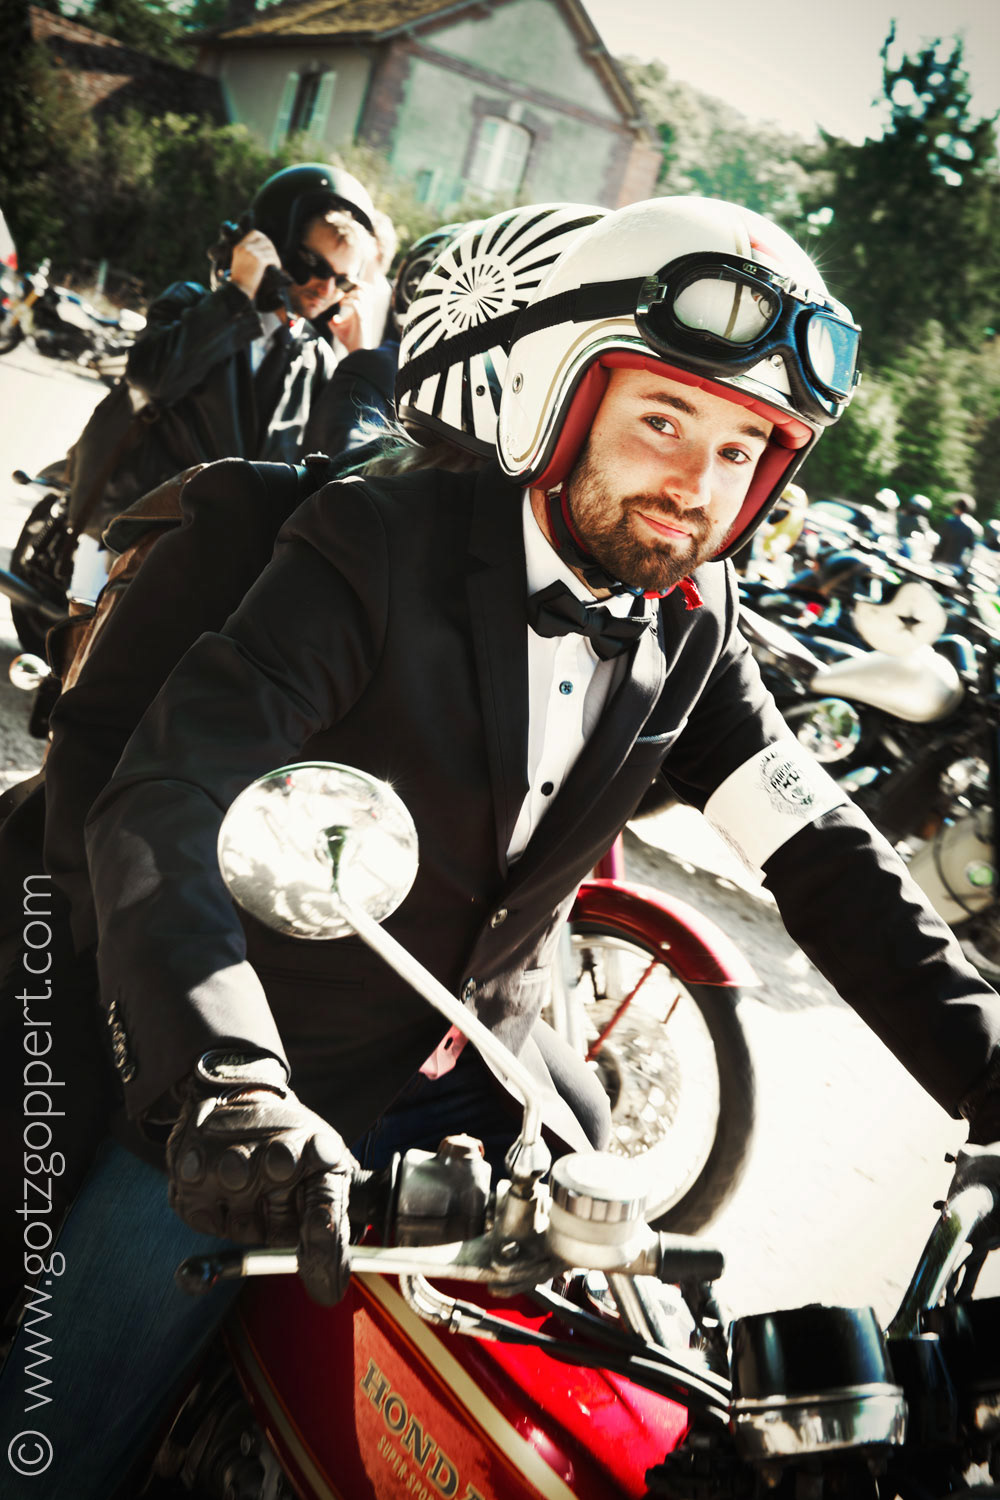 distinguished gentlemen ride motorcycle Fun cool Bike riding dressed